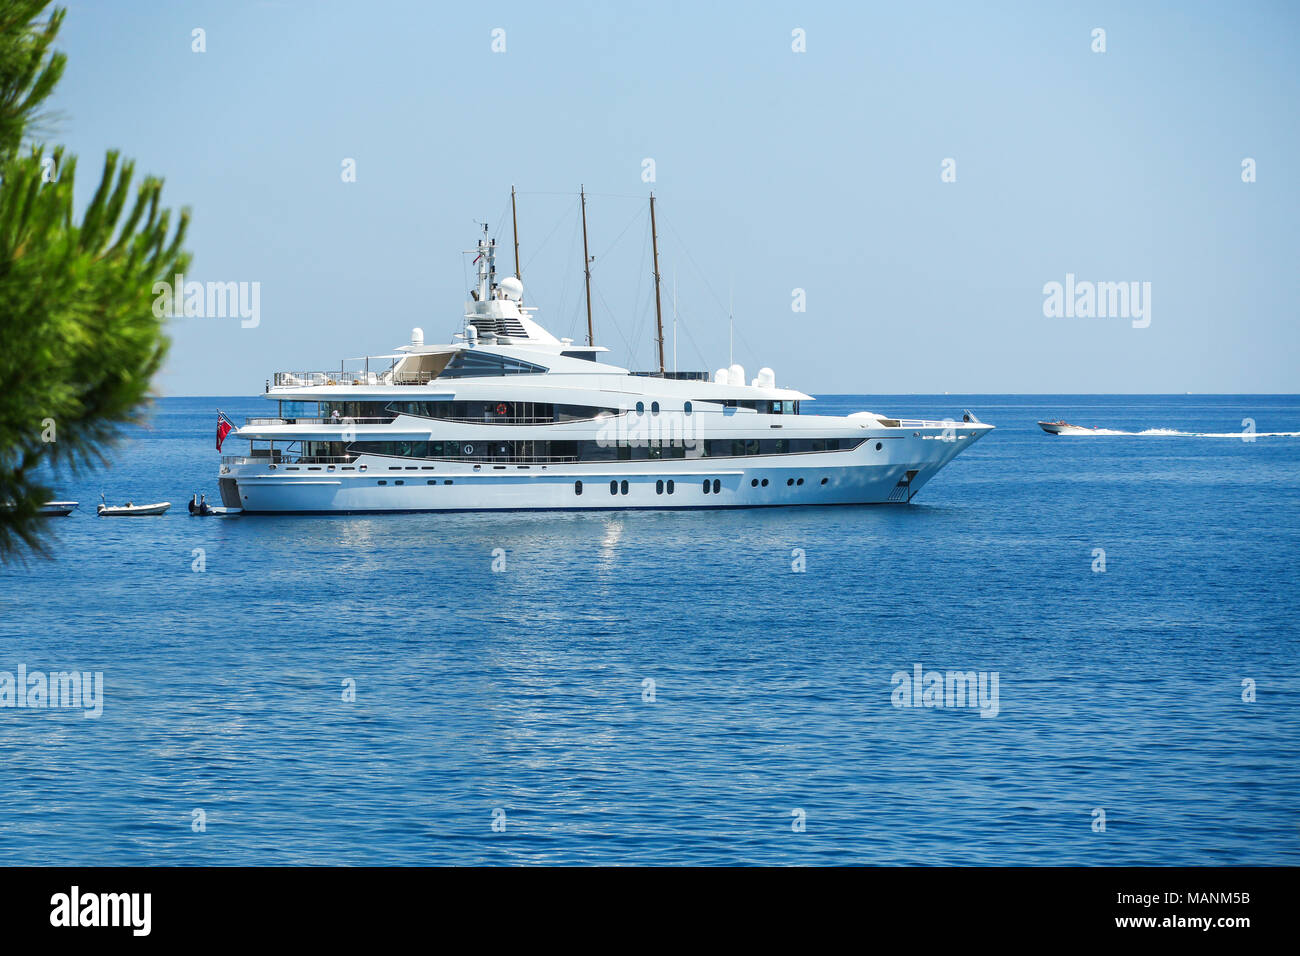 Bateau yacht de voile en mer Méditerranée près de Côte d'Azur, Monaco Banque D'Images